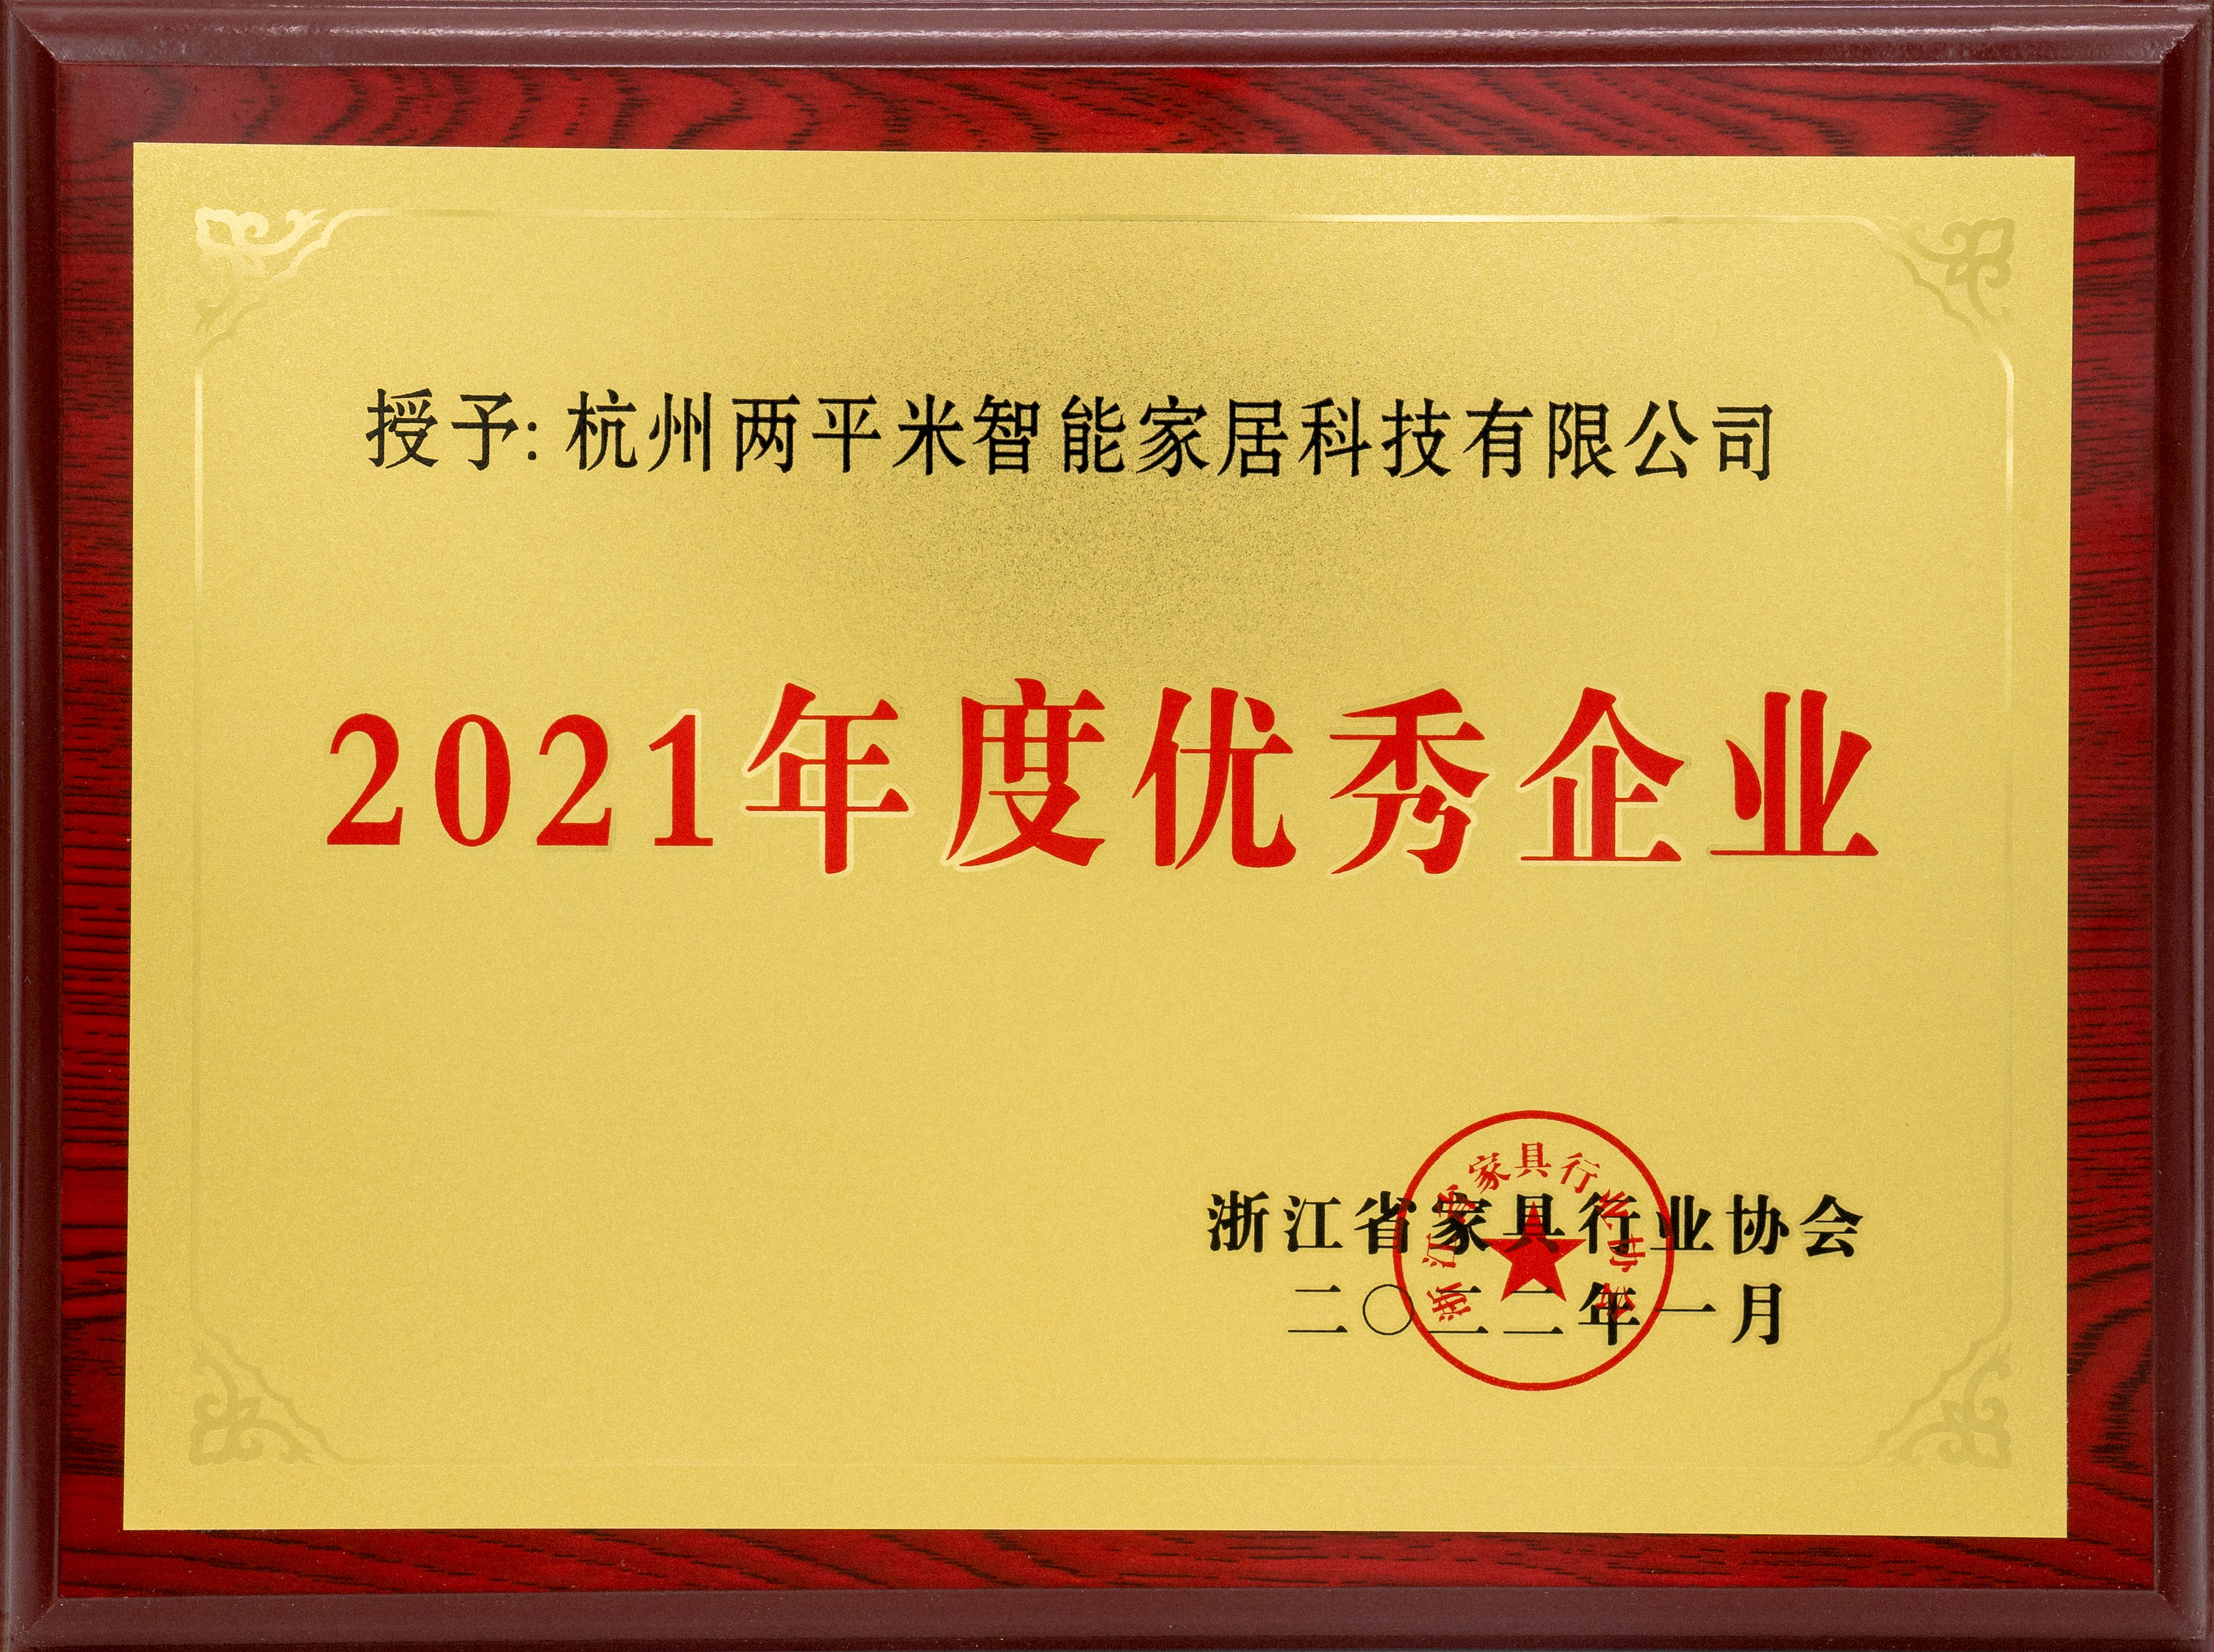 连续6年2平米再获浙江省家具行业年度优秀企业荣誉